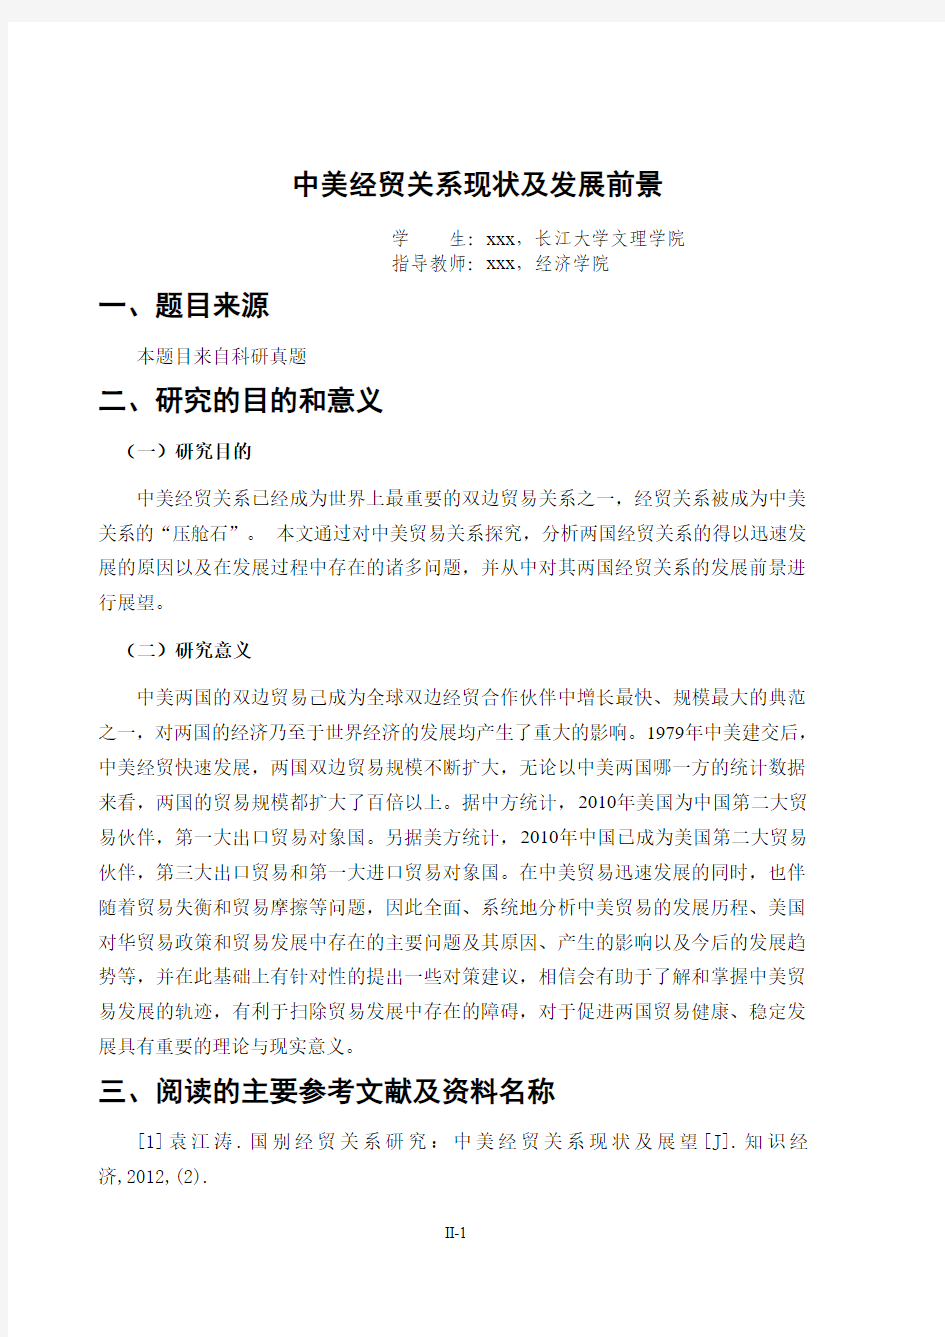 国贸专业,毕业开题报告,长江大学文理学院